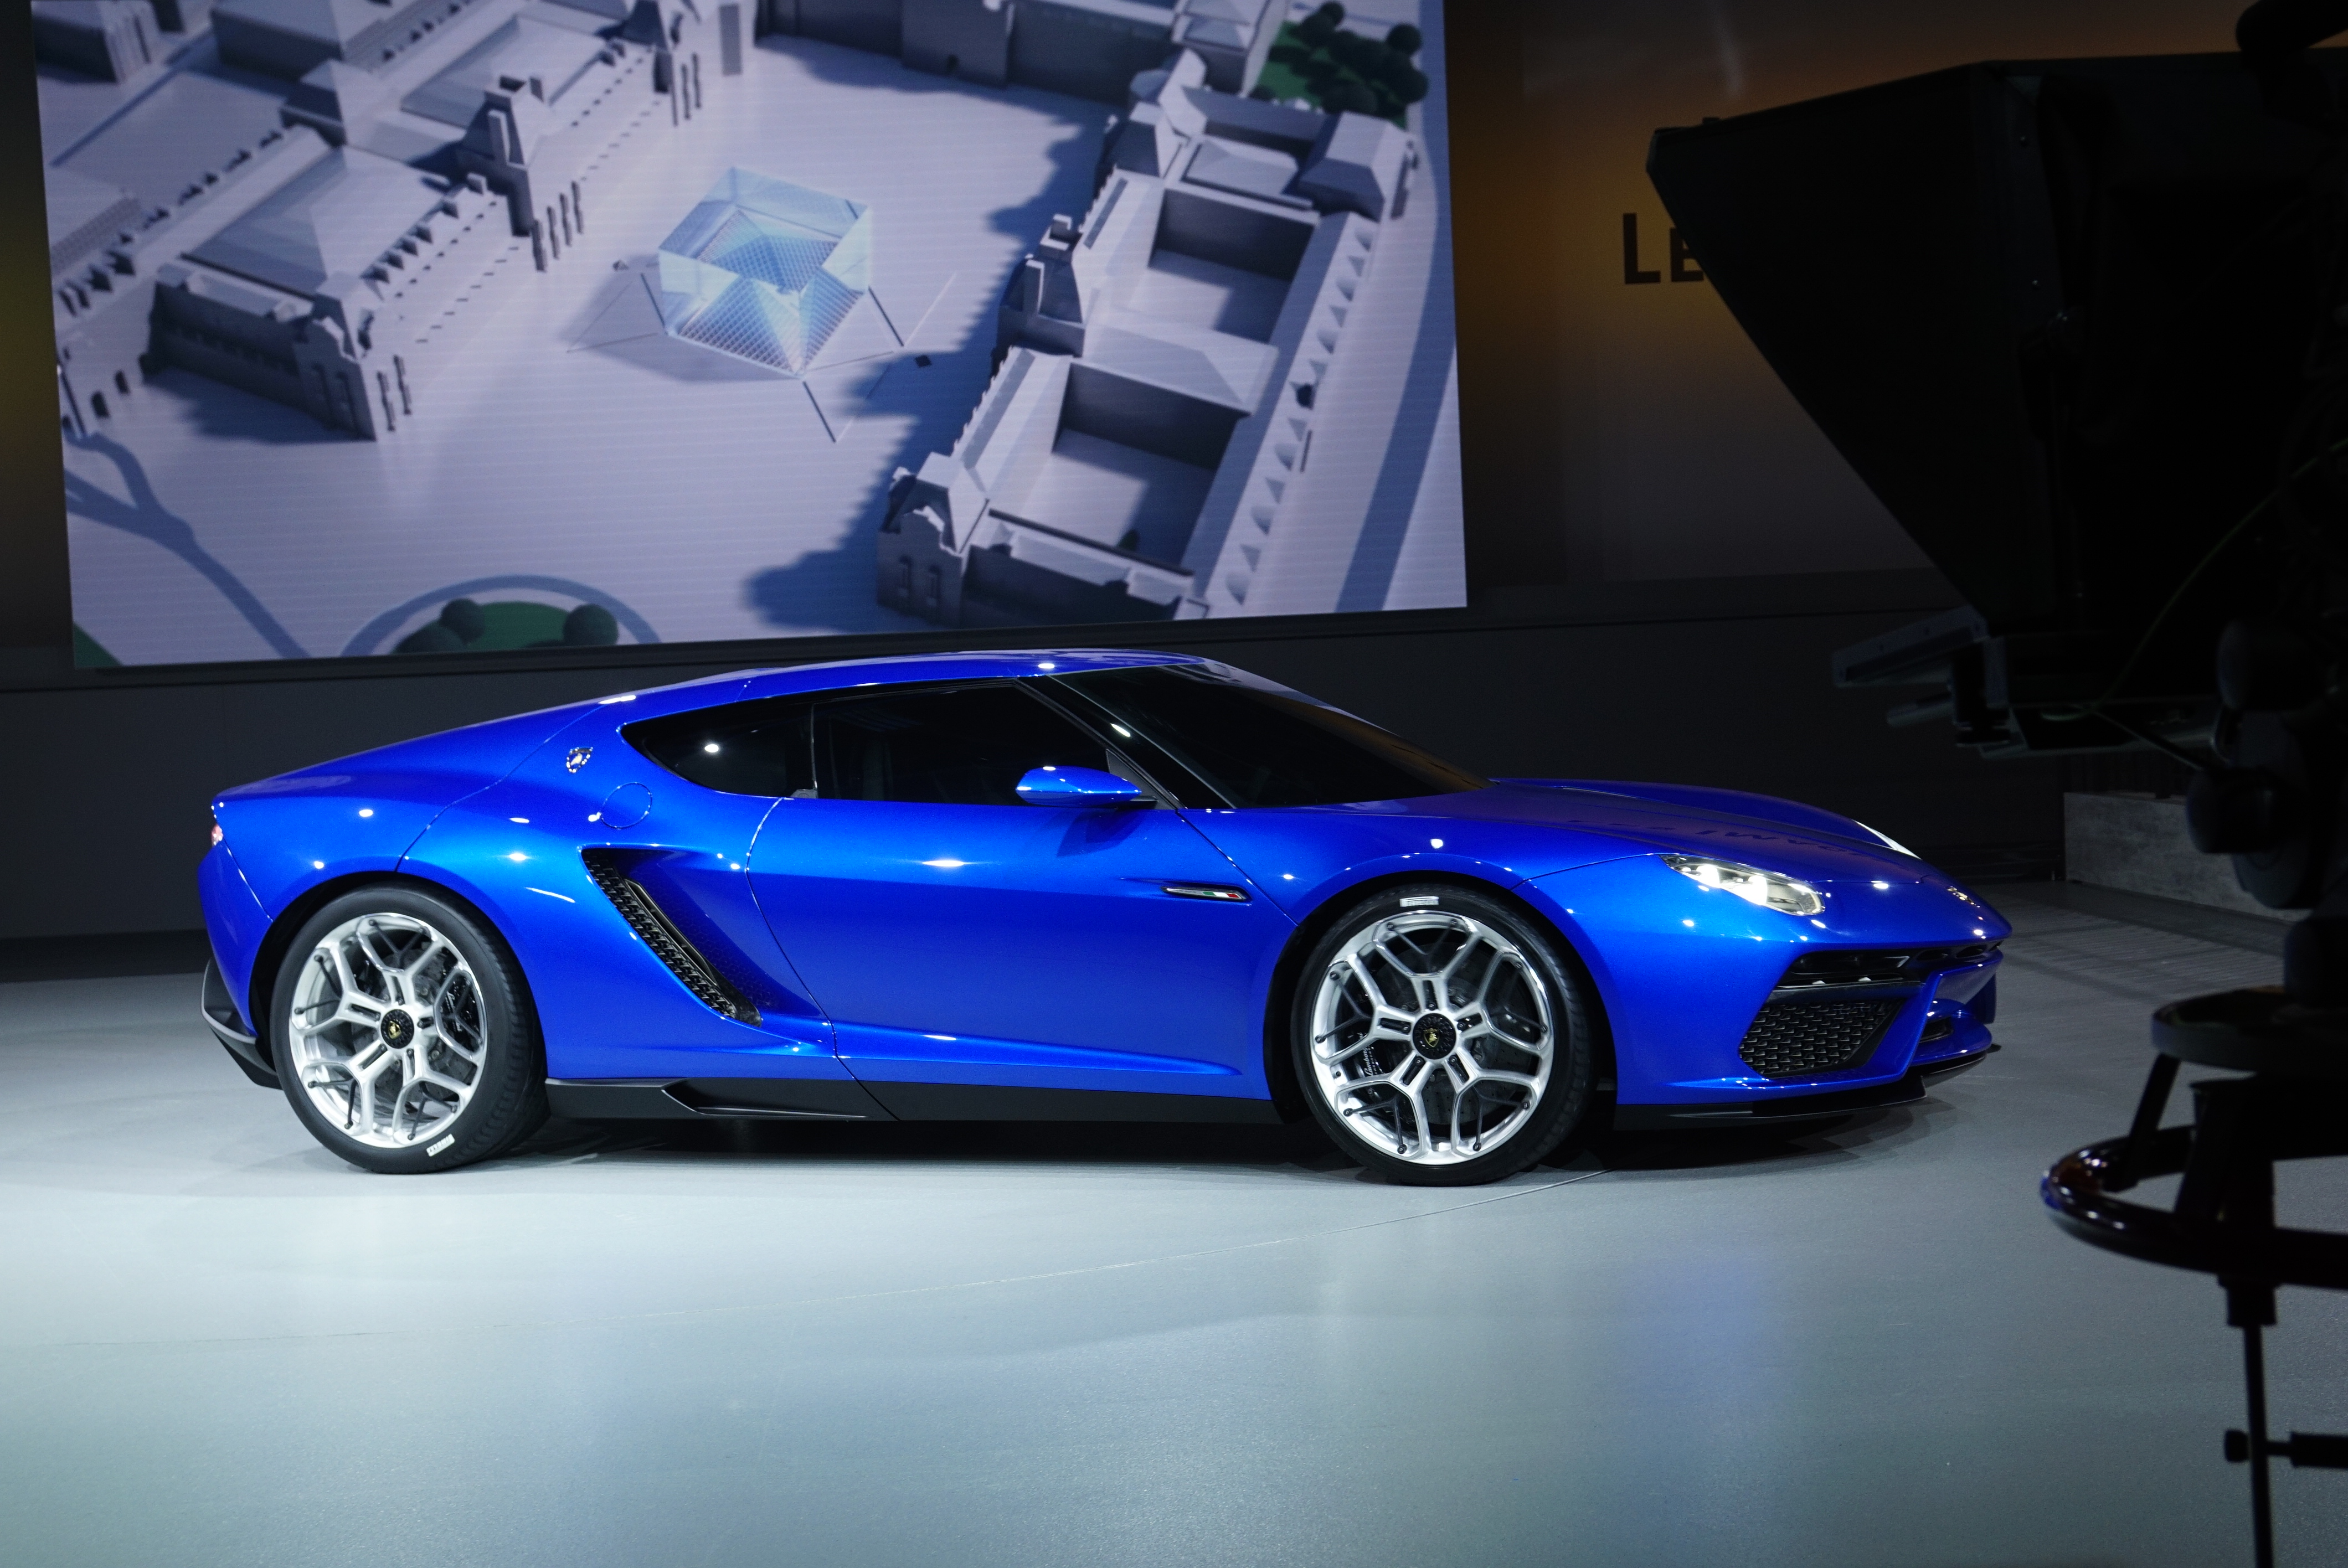 Lamborghini Asterion LPI 910-4 video: Paris motor show 2014 | evo